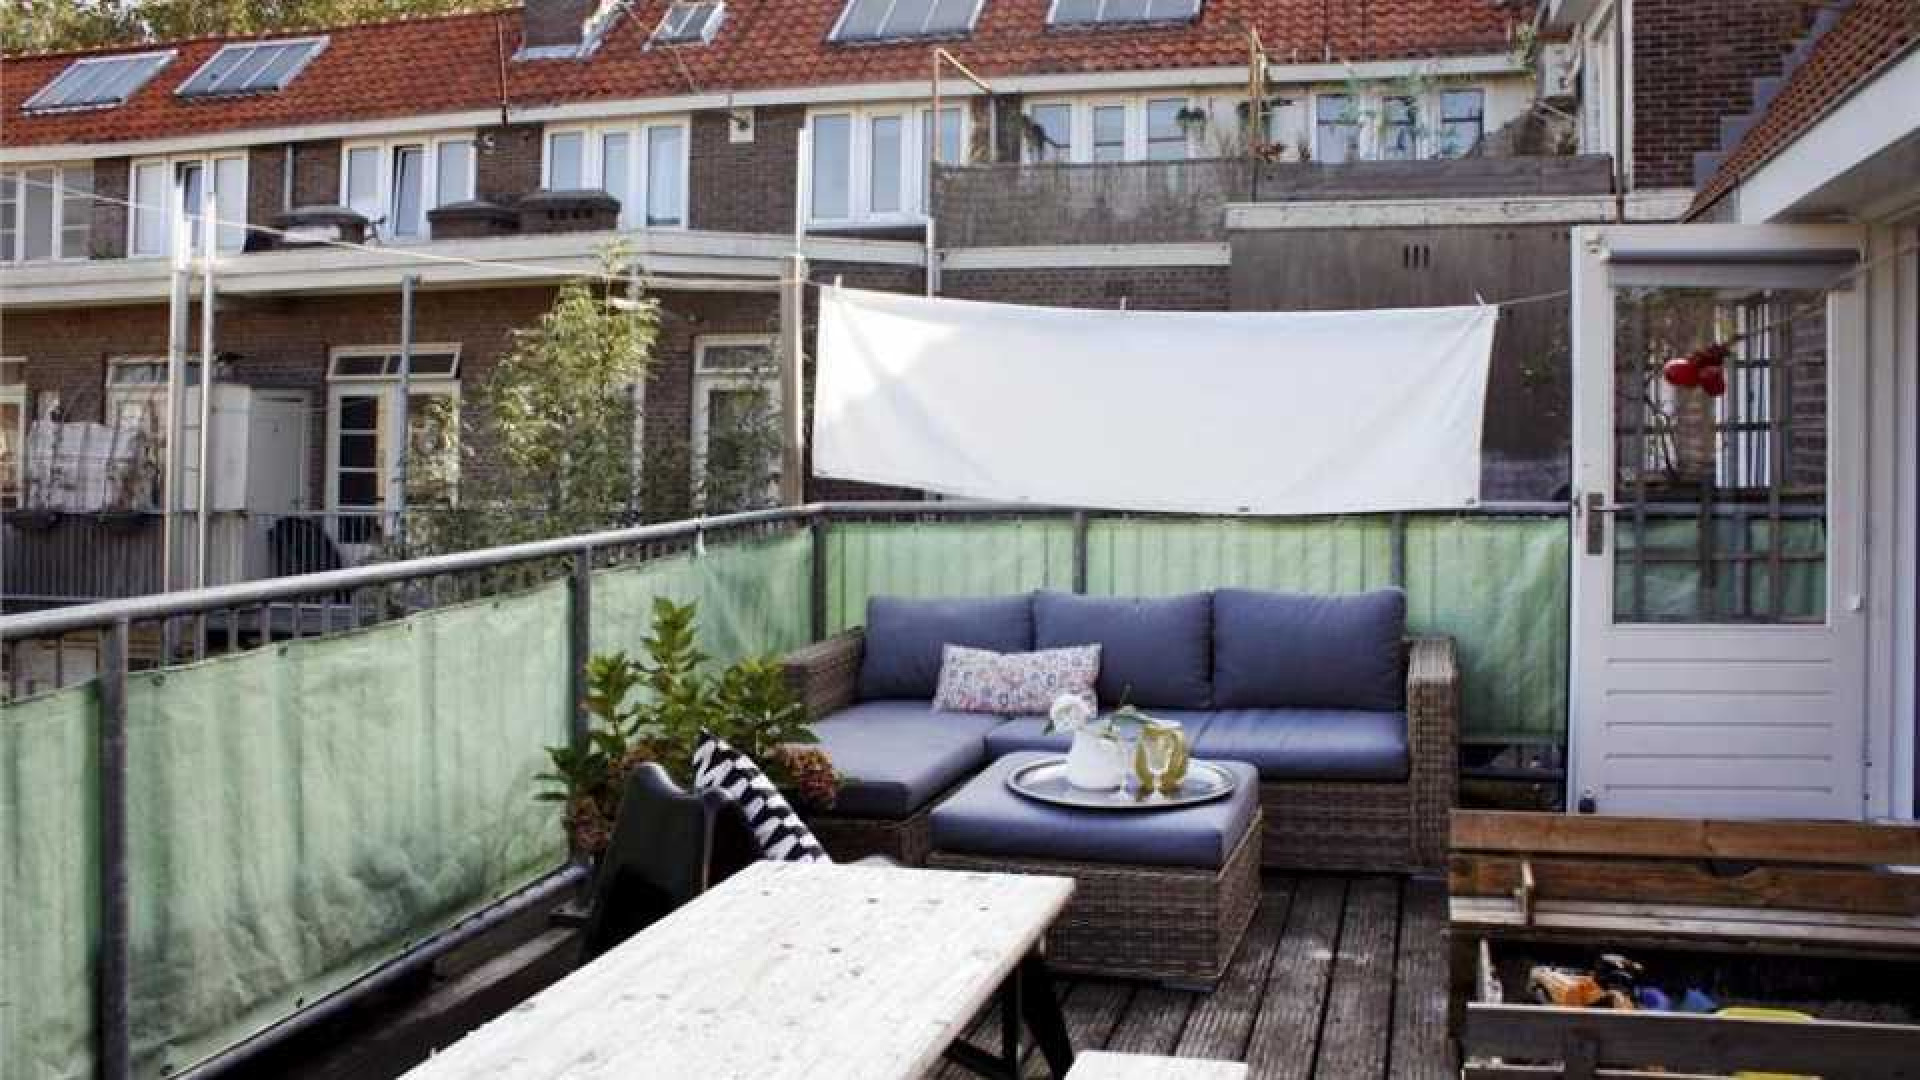 Tjitske Reidinga koopt eigen huis in Amsterdam. Zie foto's 2